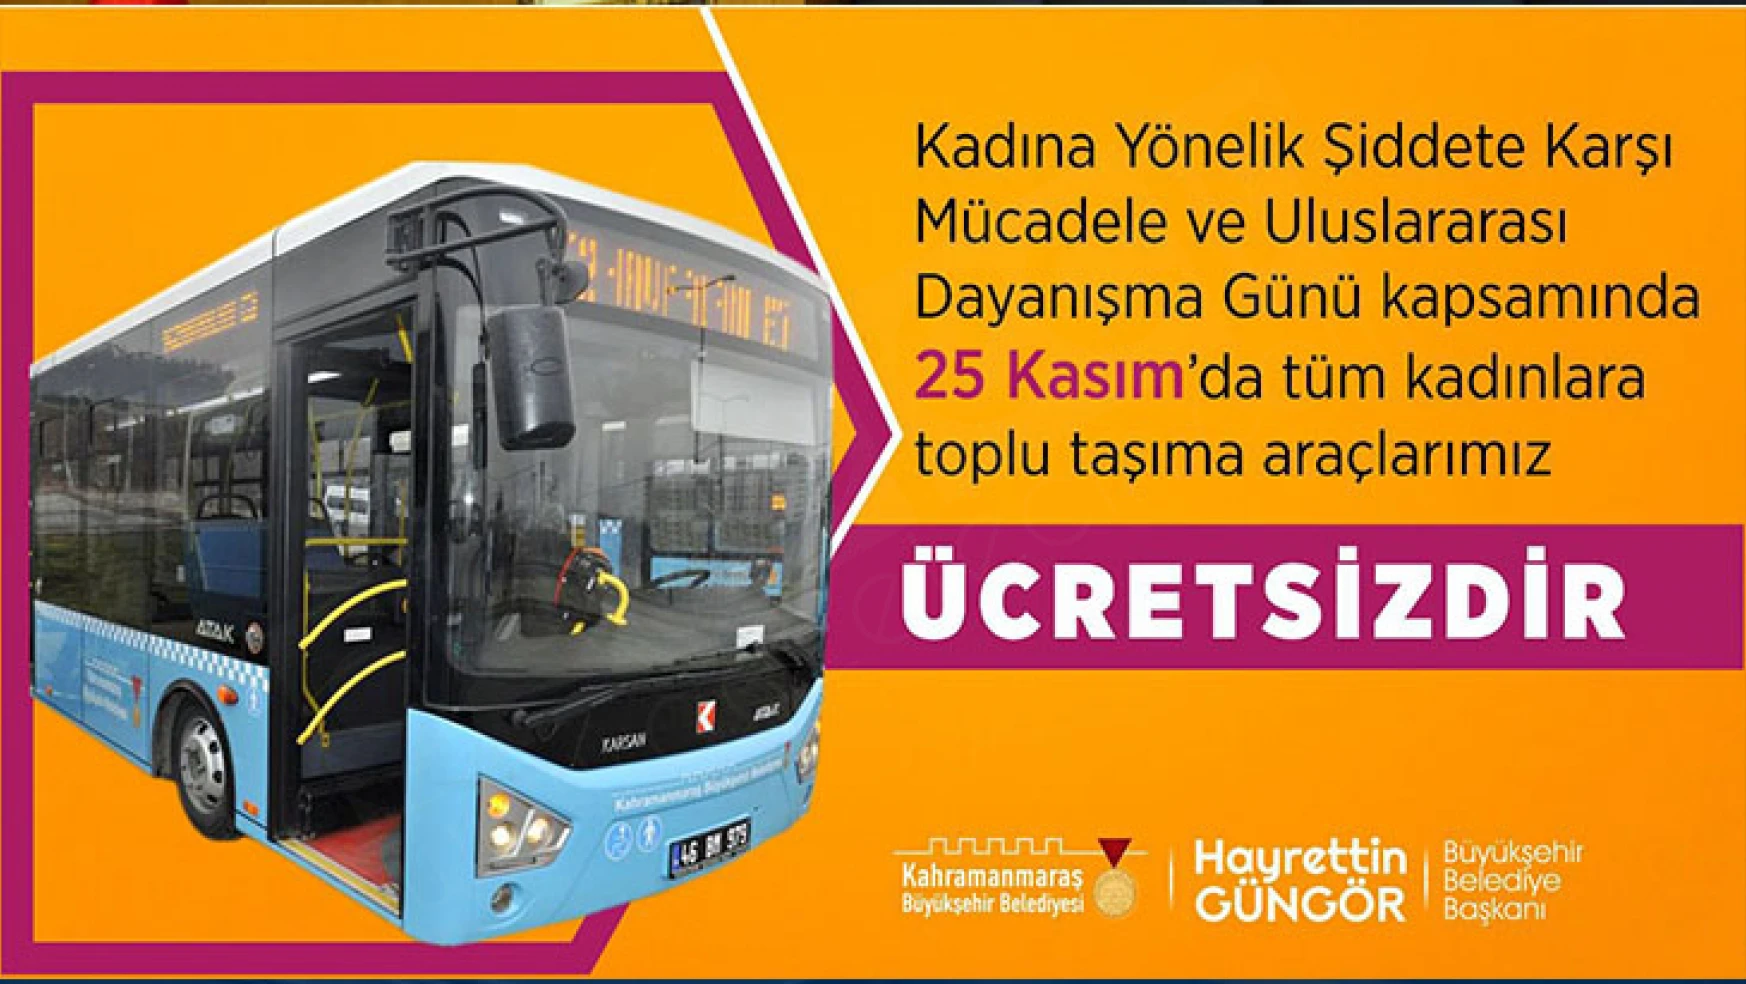 Toplu taşıma araçları bugün Kahramanmaraş'ta tüm kadınlara ücretsiz